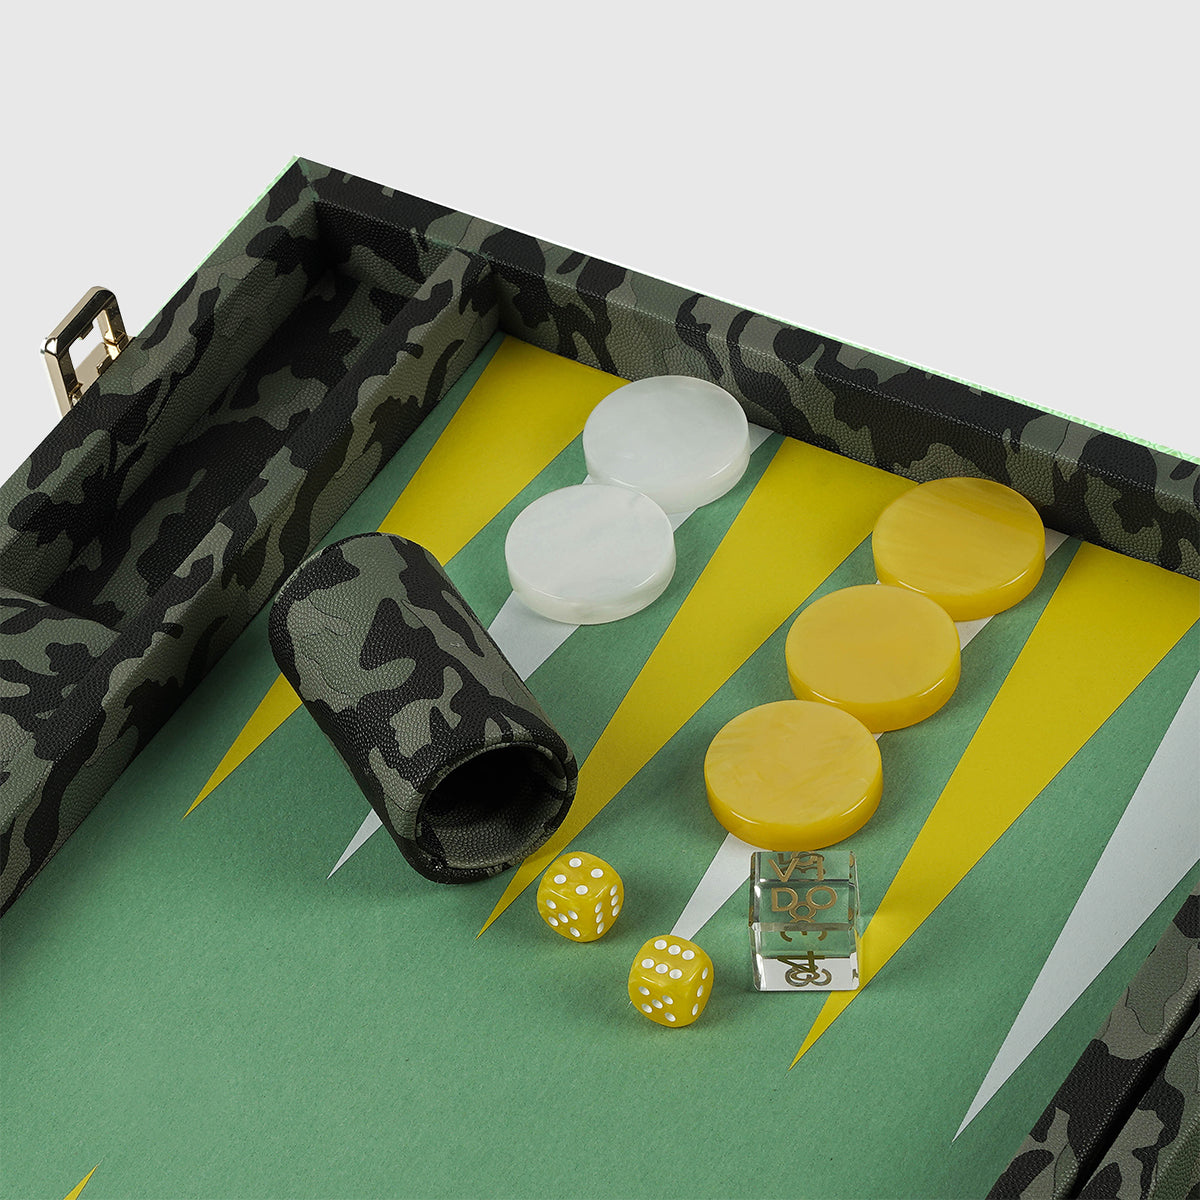 Camouflage Large Backgammon